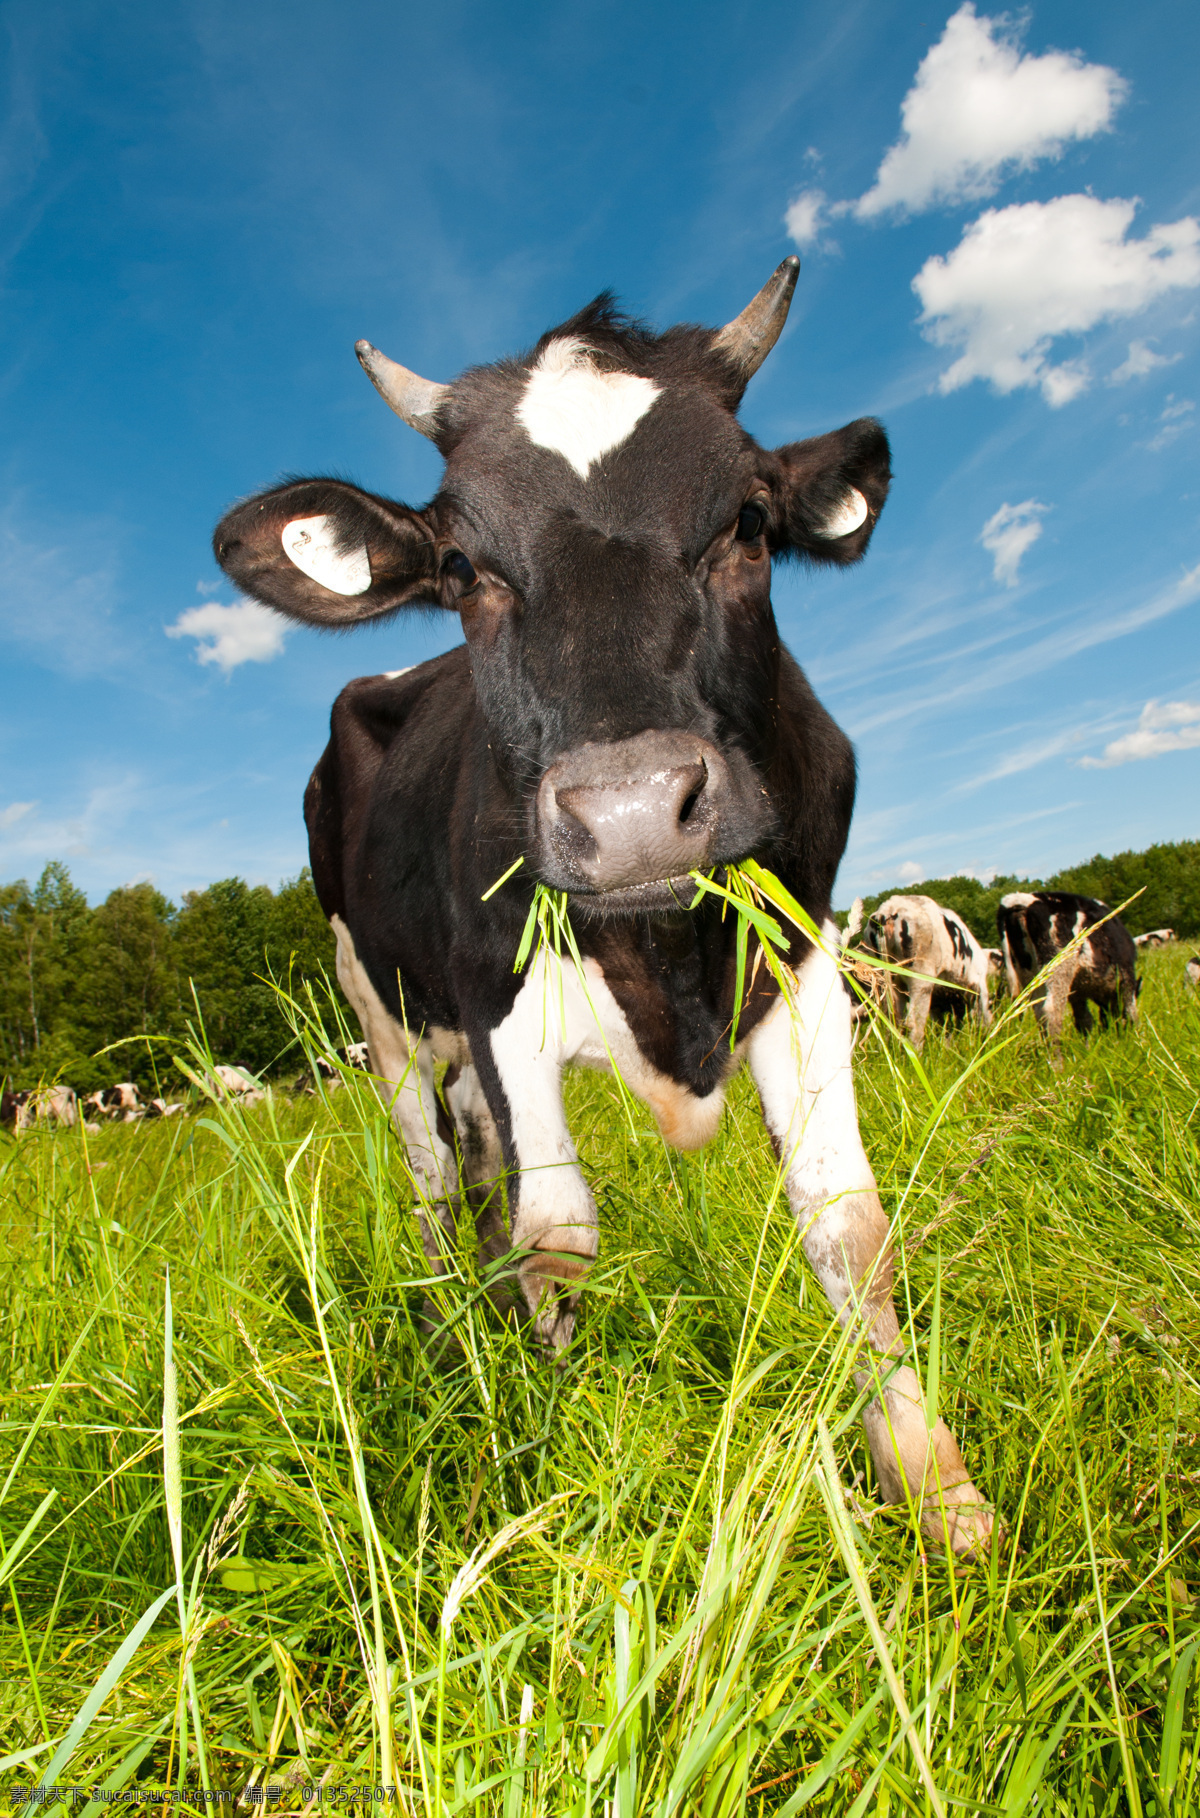 可爱奶牛 奶牛 花斑奶牛 可爱 黑白奶牛 花奶牛 大奶牛 吃草的奶牛 母牛 小草 草地 家禽家畜 动物矢量 生物世界